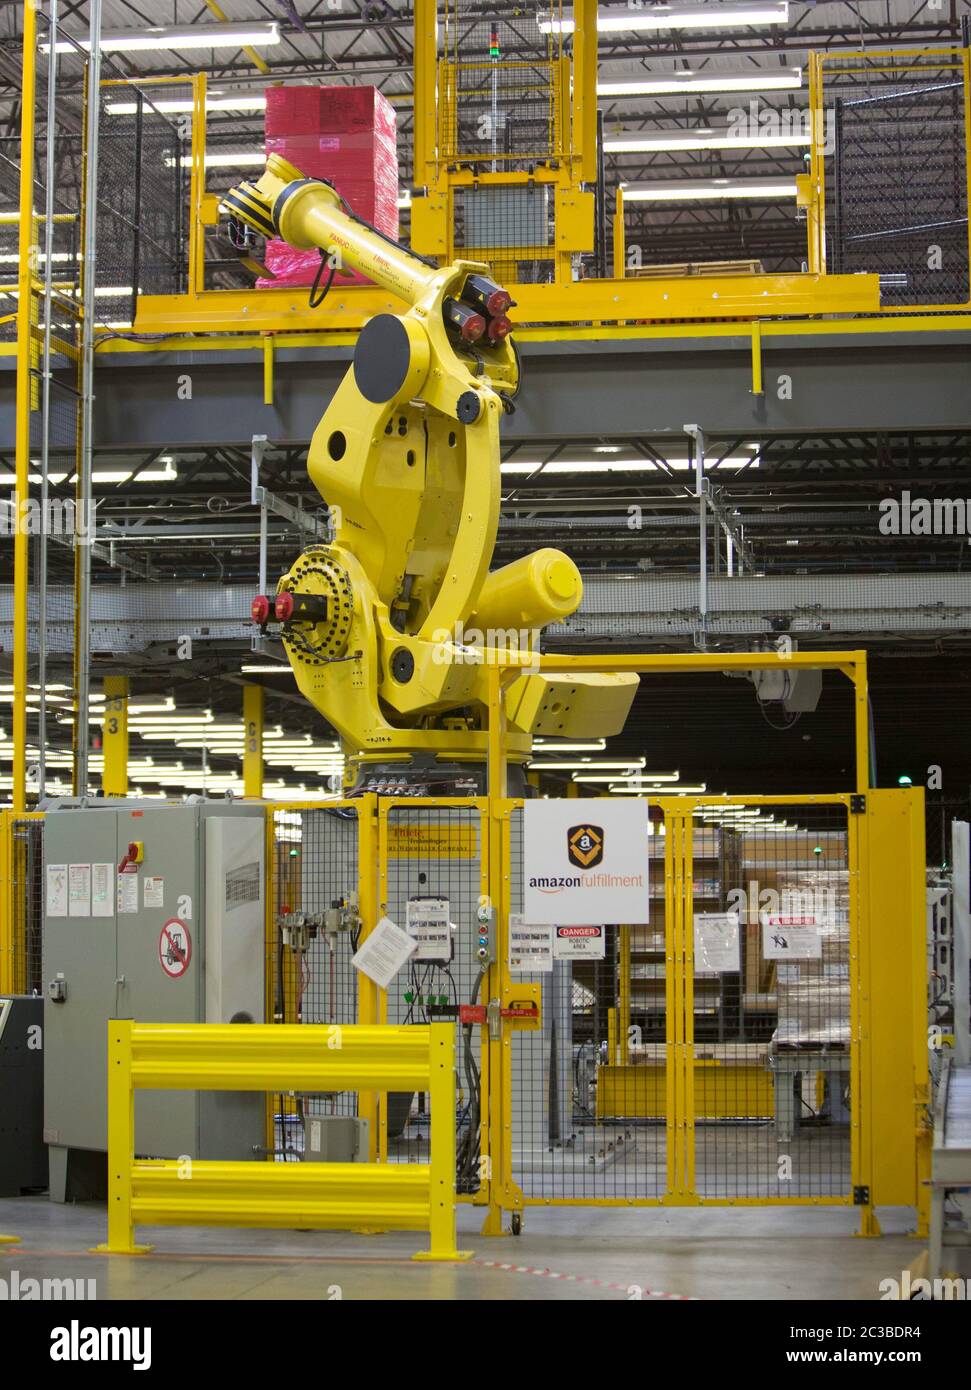 Amazon Fulfillment Center - Robo-Stow, der 6-Tonnen-Roboterarm im 1.25  Millionen Quadratmeter großen Amazon Versandzentrum in Schertz, Texas. Der  Roboterarm übernimmt die meisten der schweren Hebe in der Anlage © MKC /  Daemmrich